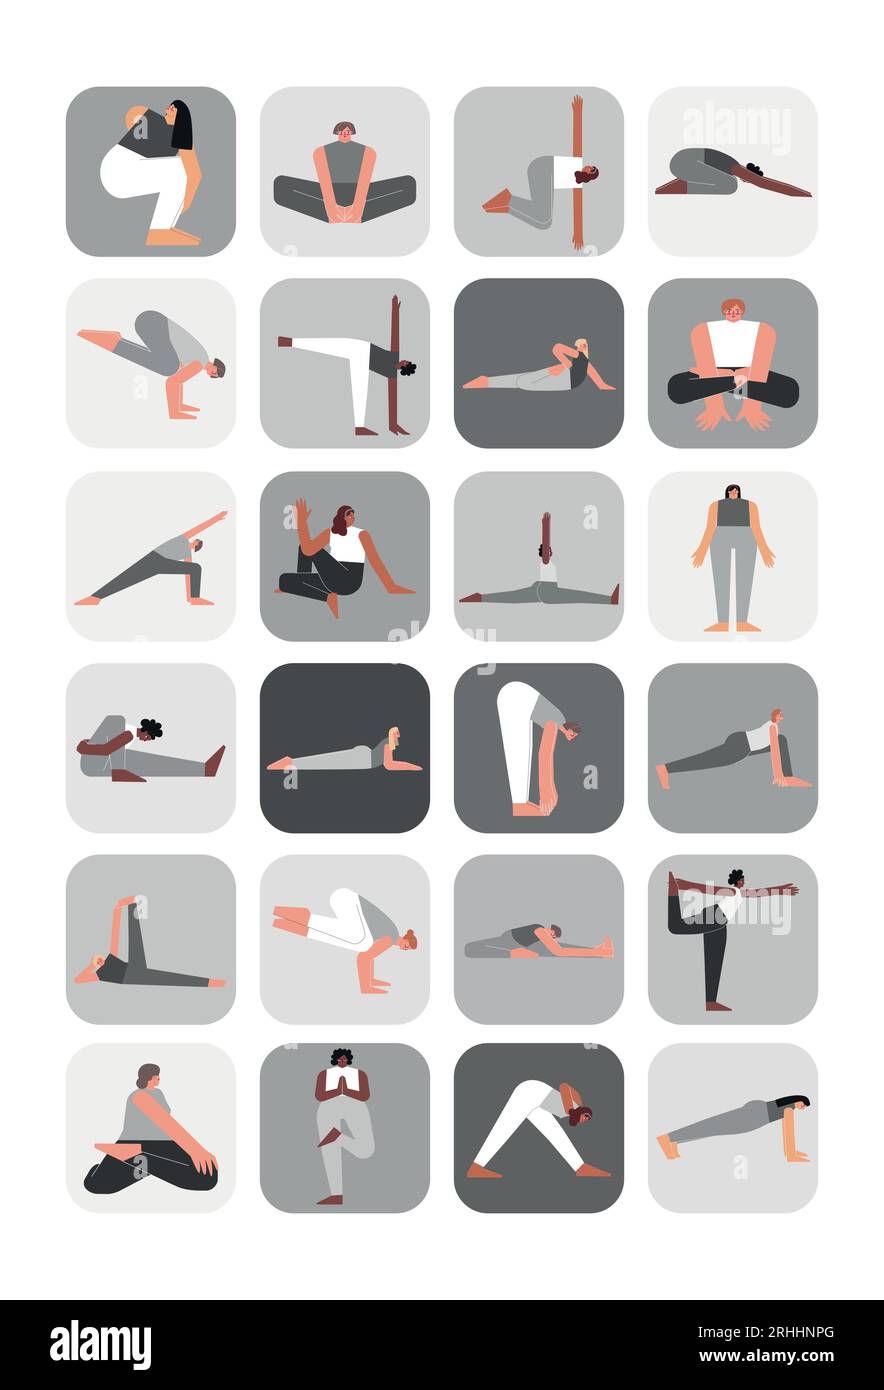 Set d'illustration vectorielle pour pack d'autocollants avec poses de yoga. Collection monochrome plate sur affiche A4 verticale avec des femmes asiatiques, africaines et caucasiennes MAK Illustration de Vecteur